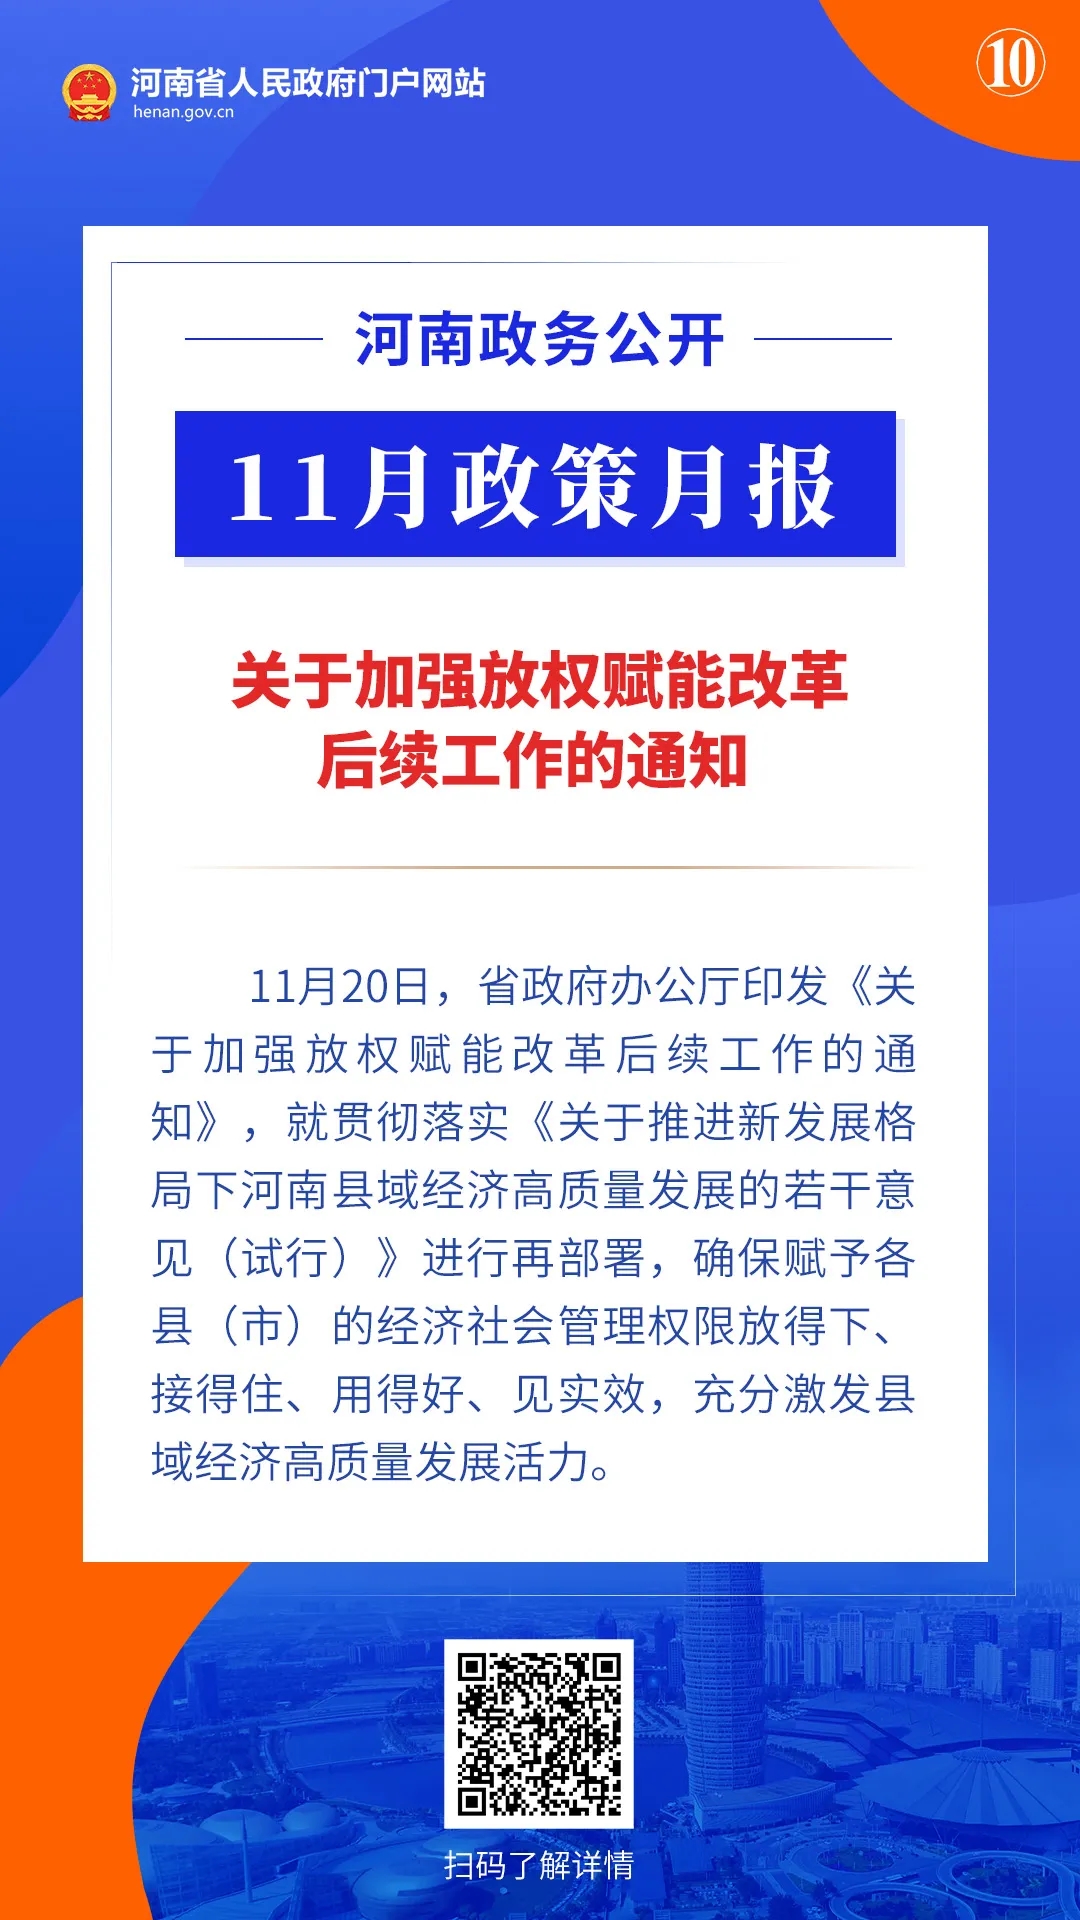 11月，河南省政府出臺了這些重要政策